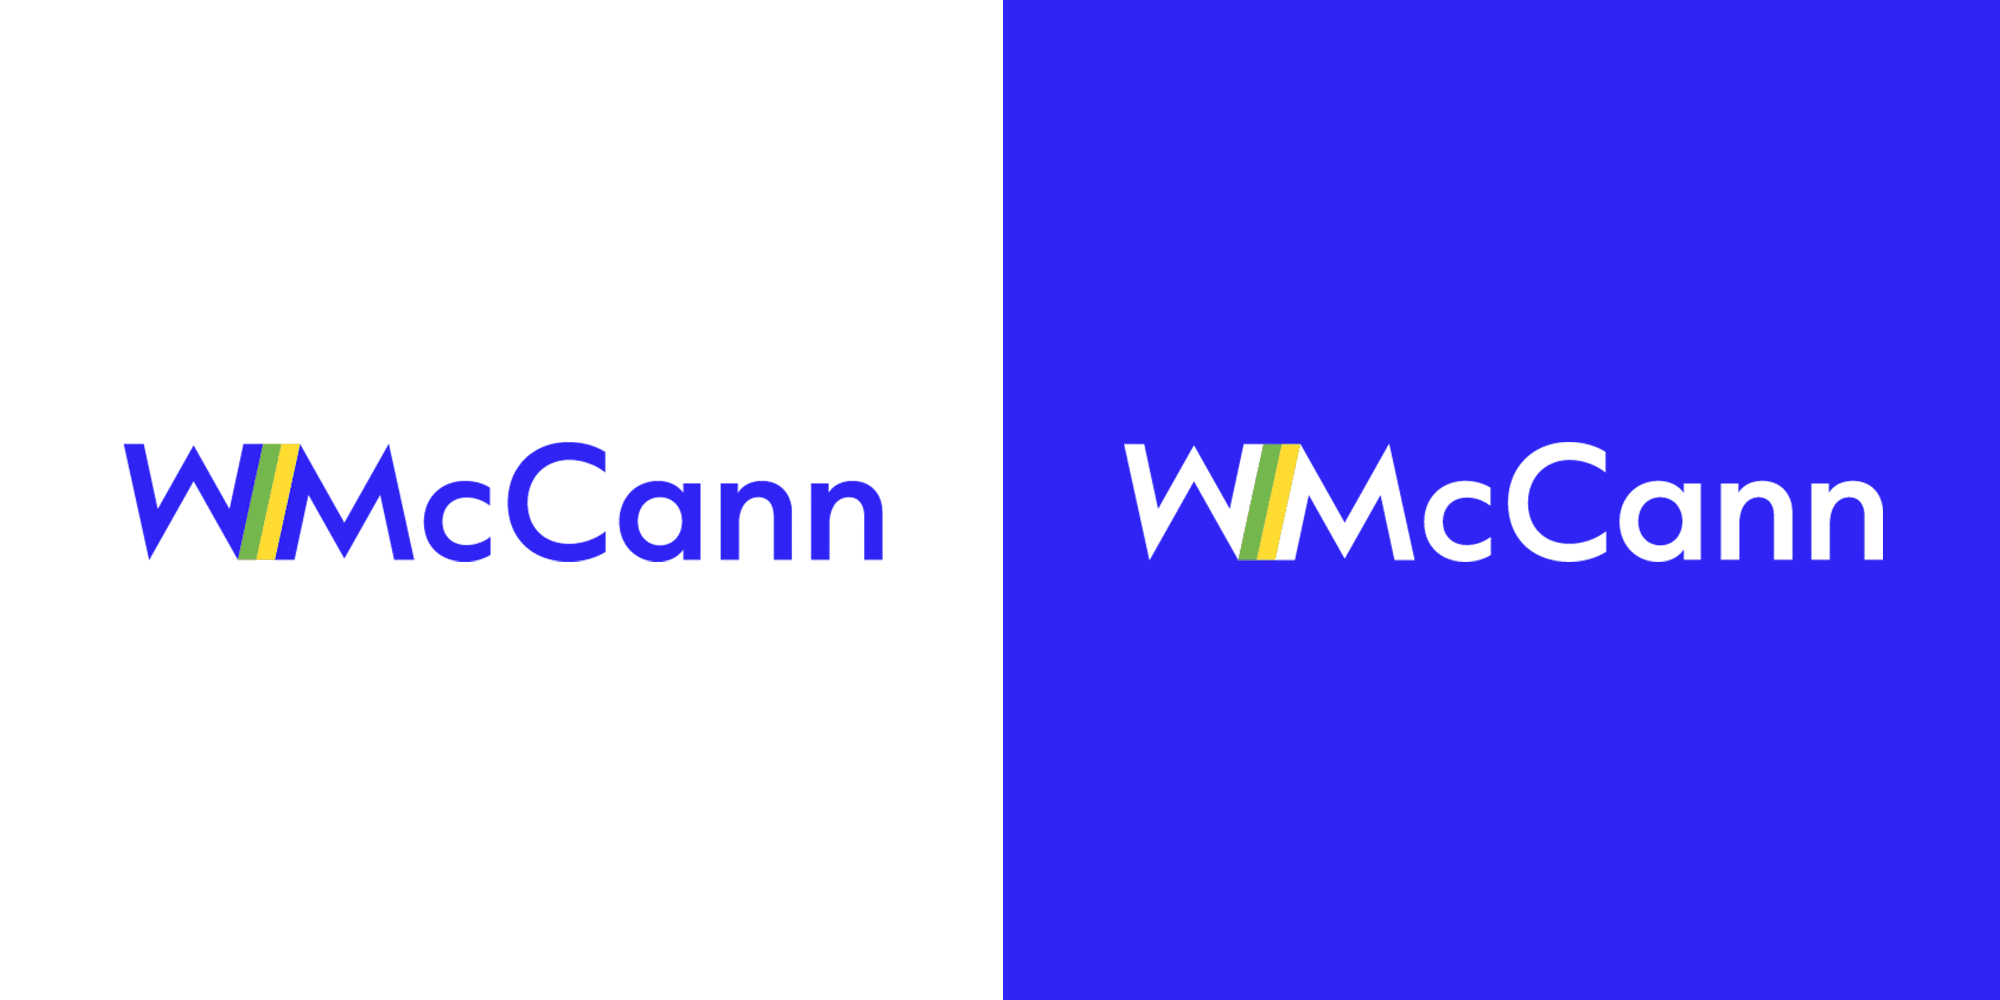 WMcCann adota nova identidade a partir da mudança global